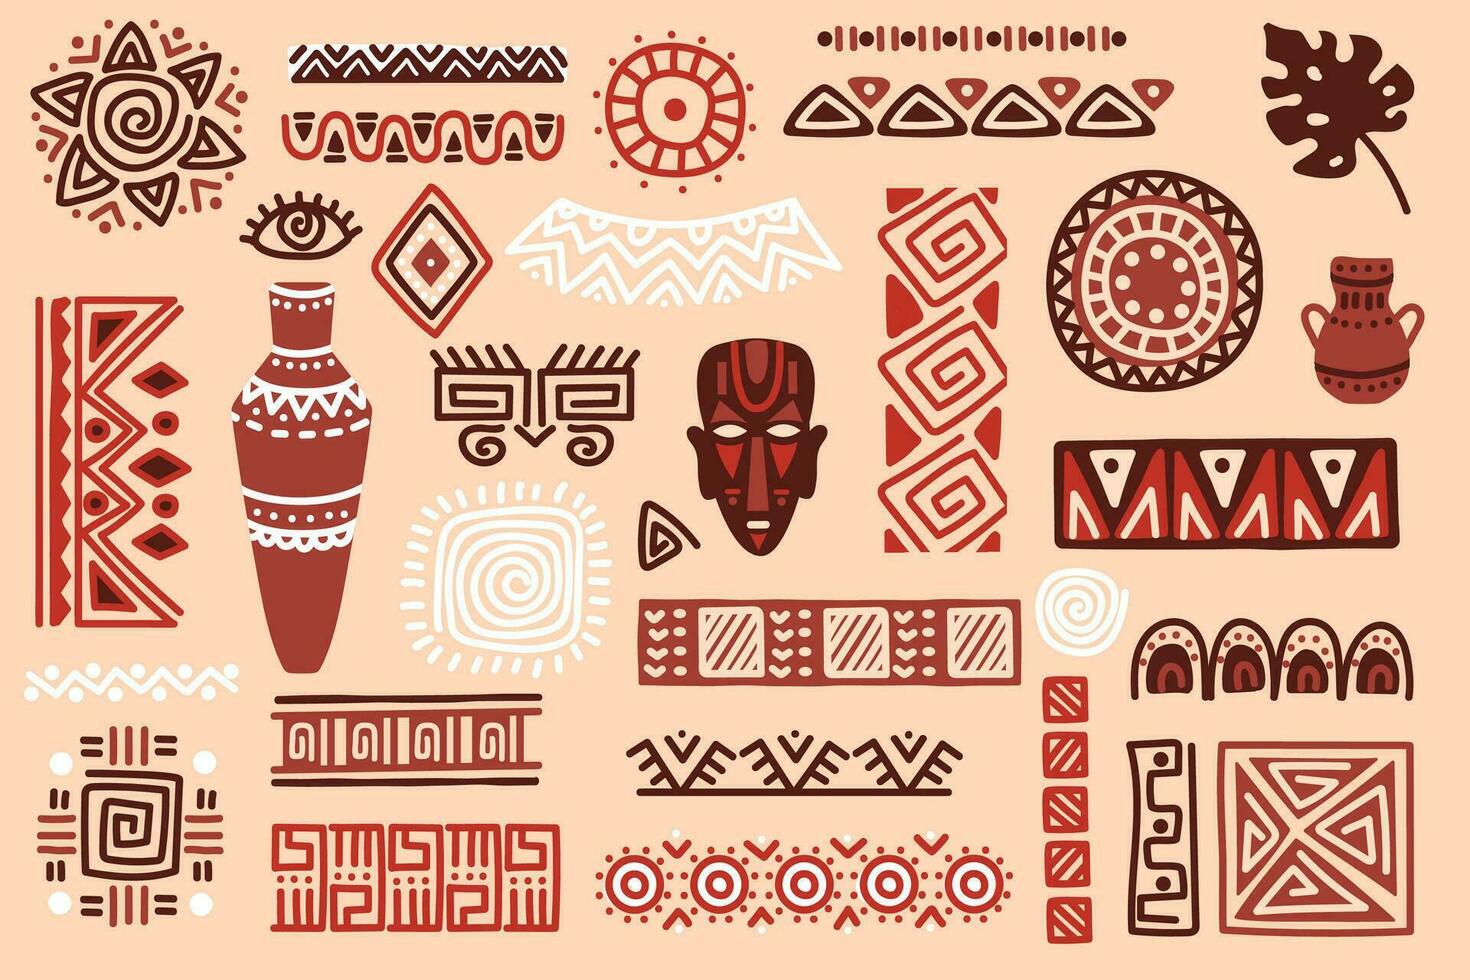 main tiré africain éléments, tribal formes et textile ornements. traditionnel rituel masques, vases, ethnique cercles et les frontières vecteur ensemble